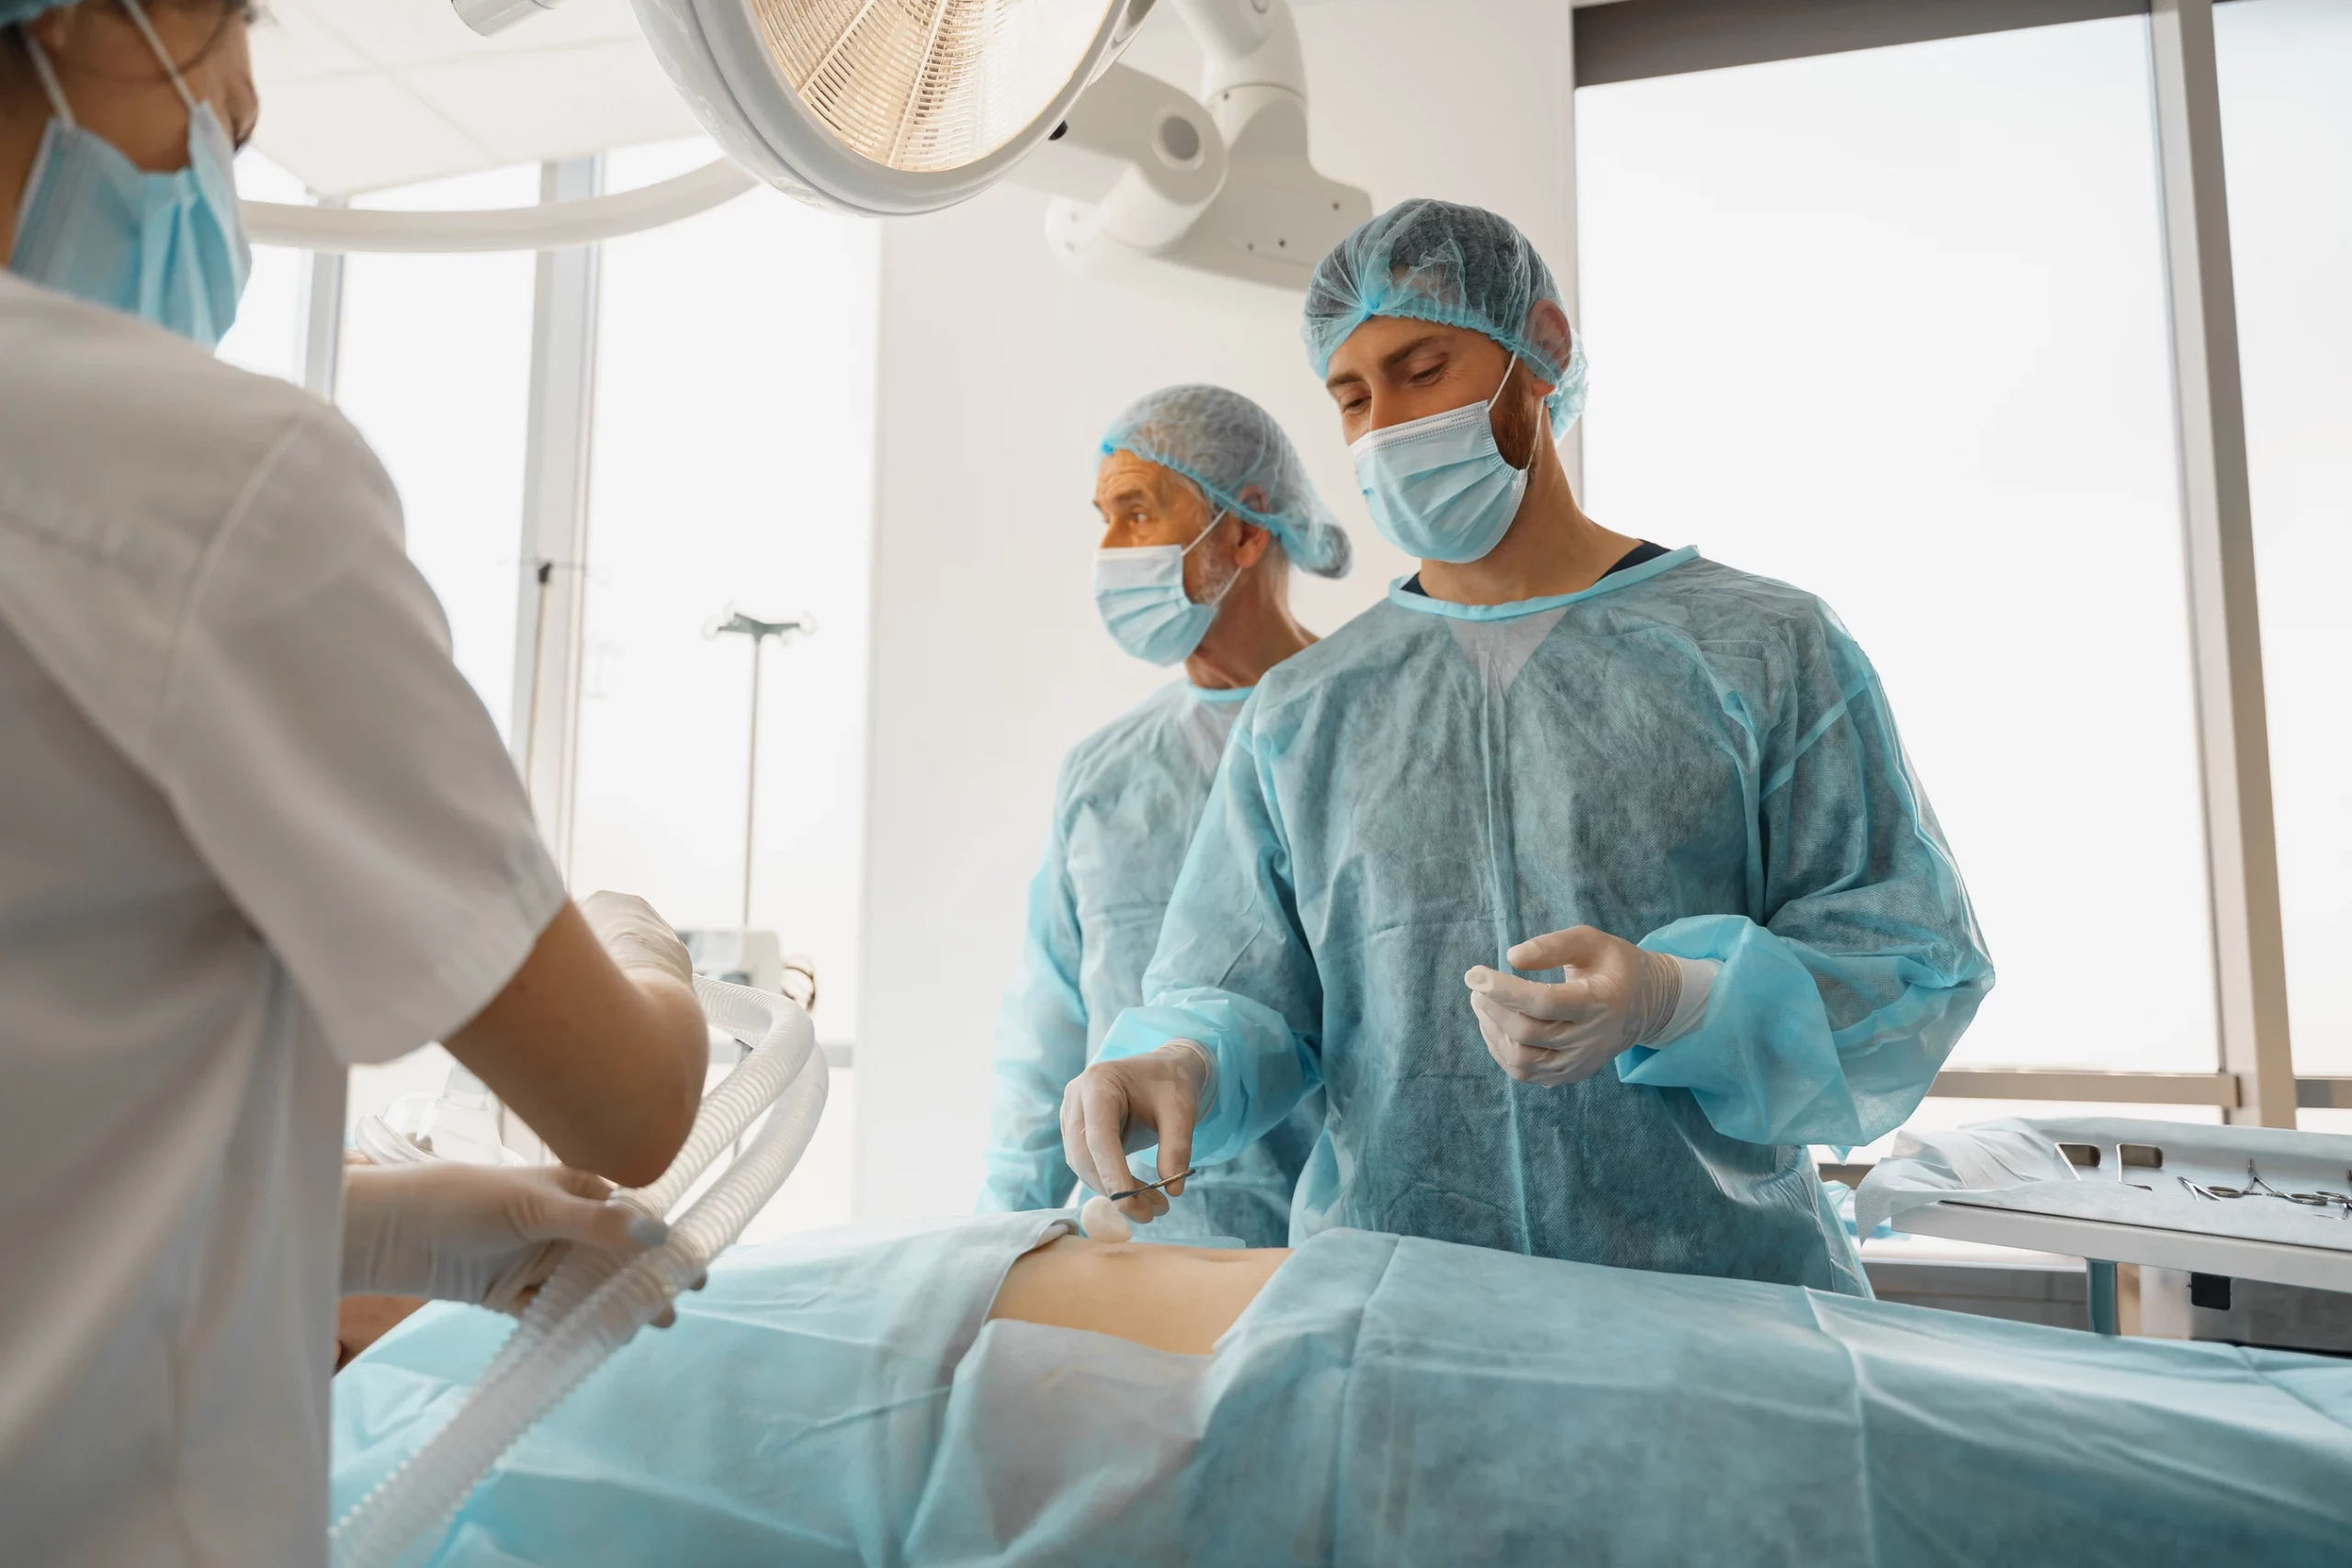 Chirurgisches Team in steriler Kleidung bereitet sich auf eine Operation vor.